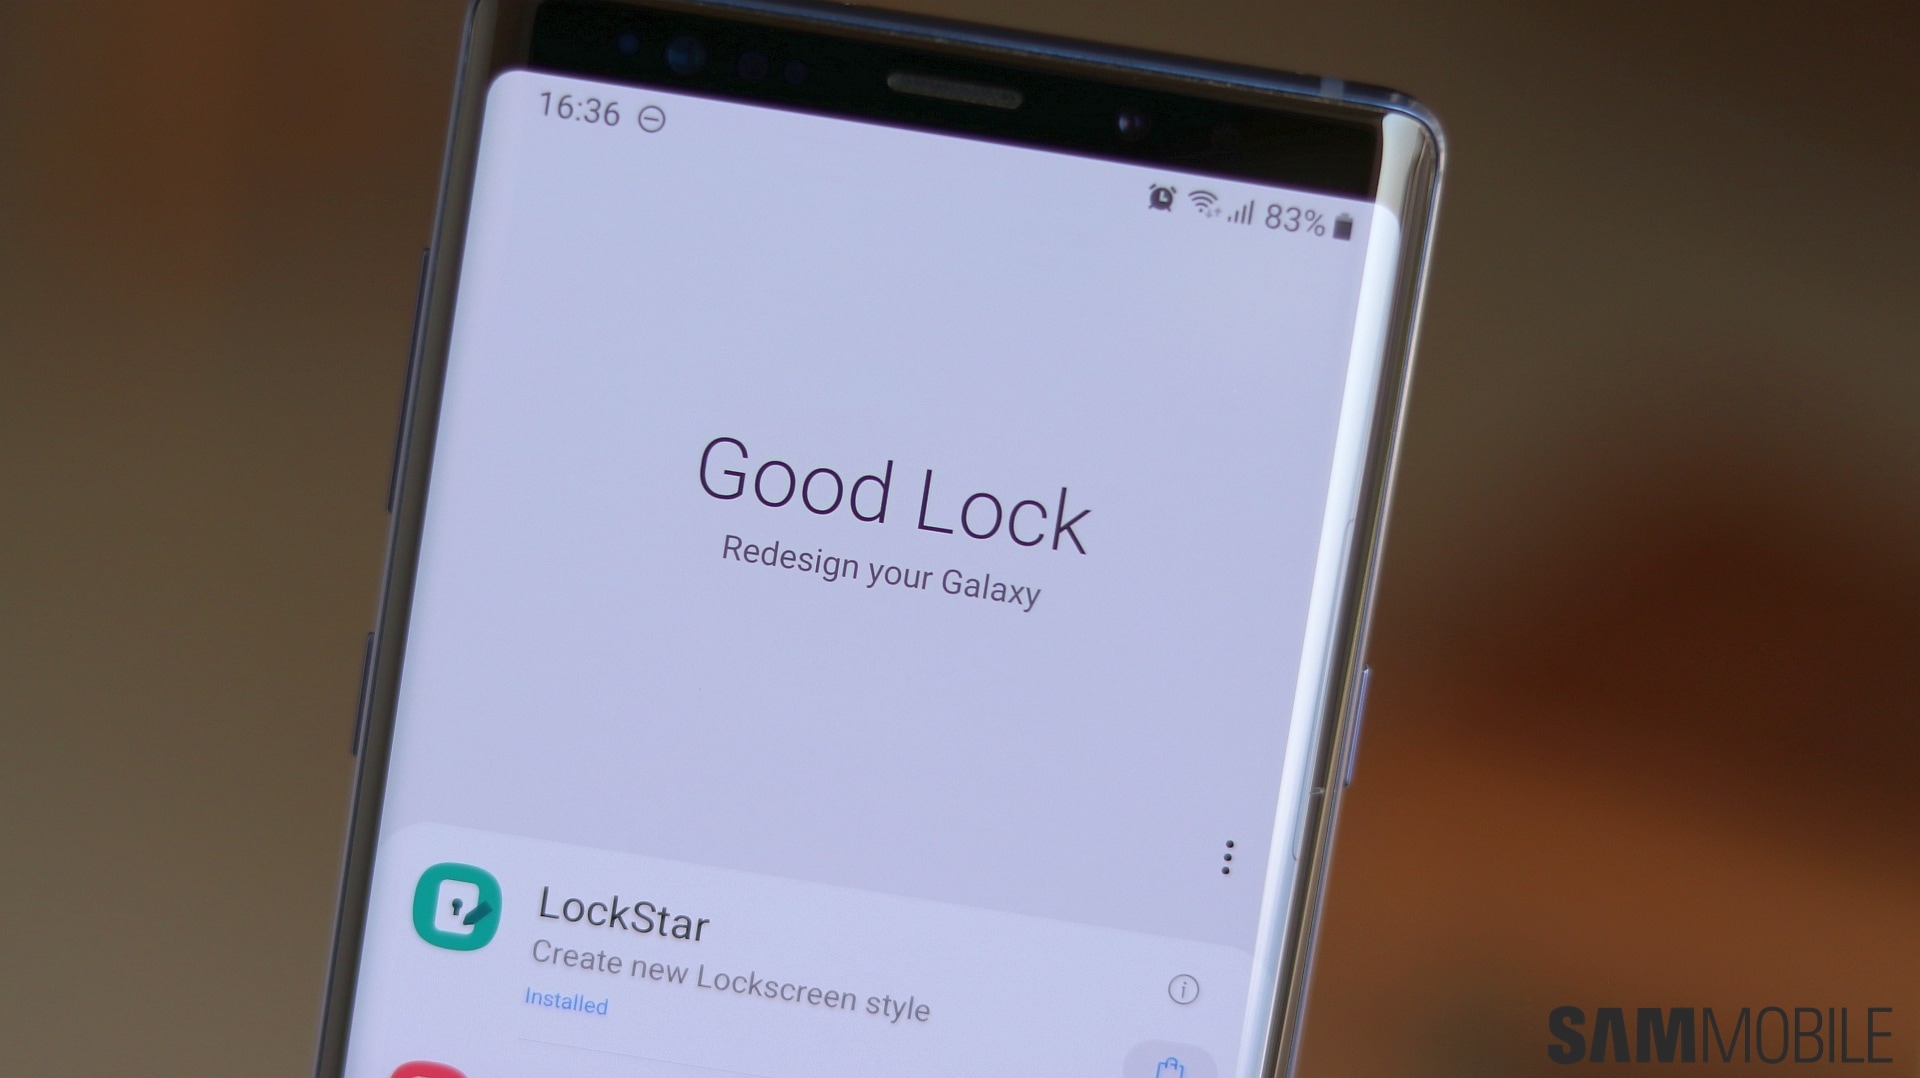 Good Lock 2020 arriverà con un mese di anticipo: supporto ad Android 10, ONE UI 2.0 e tante novità (aggiornato: arrivato, ma non Italia) (foto)